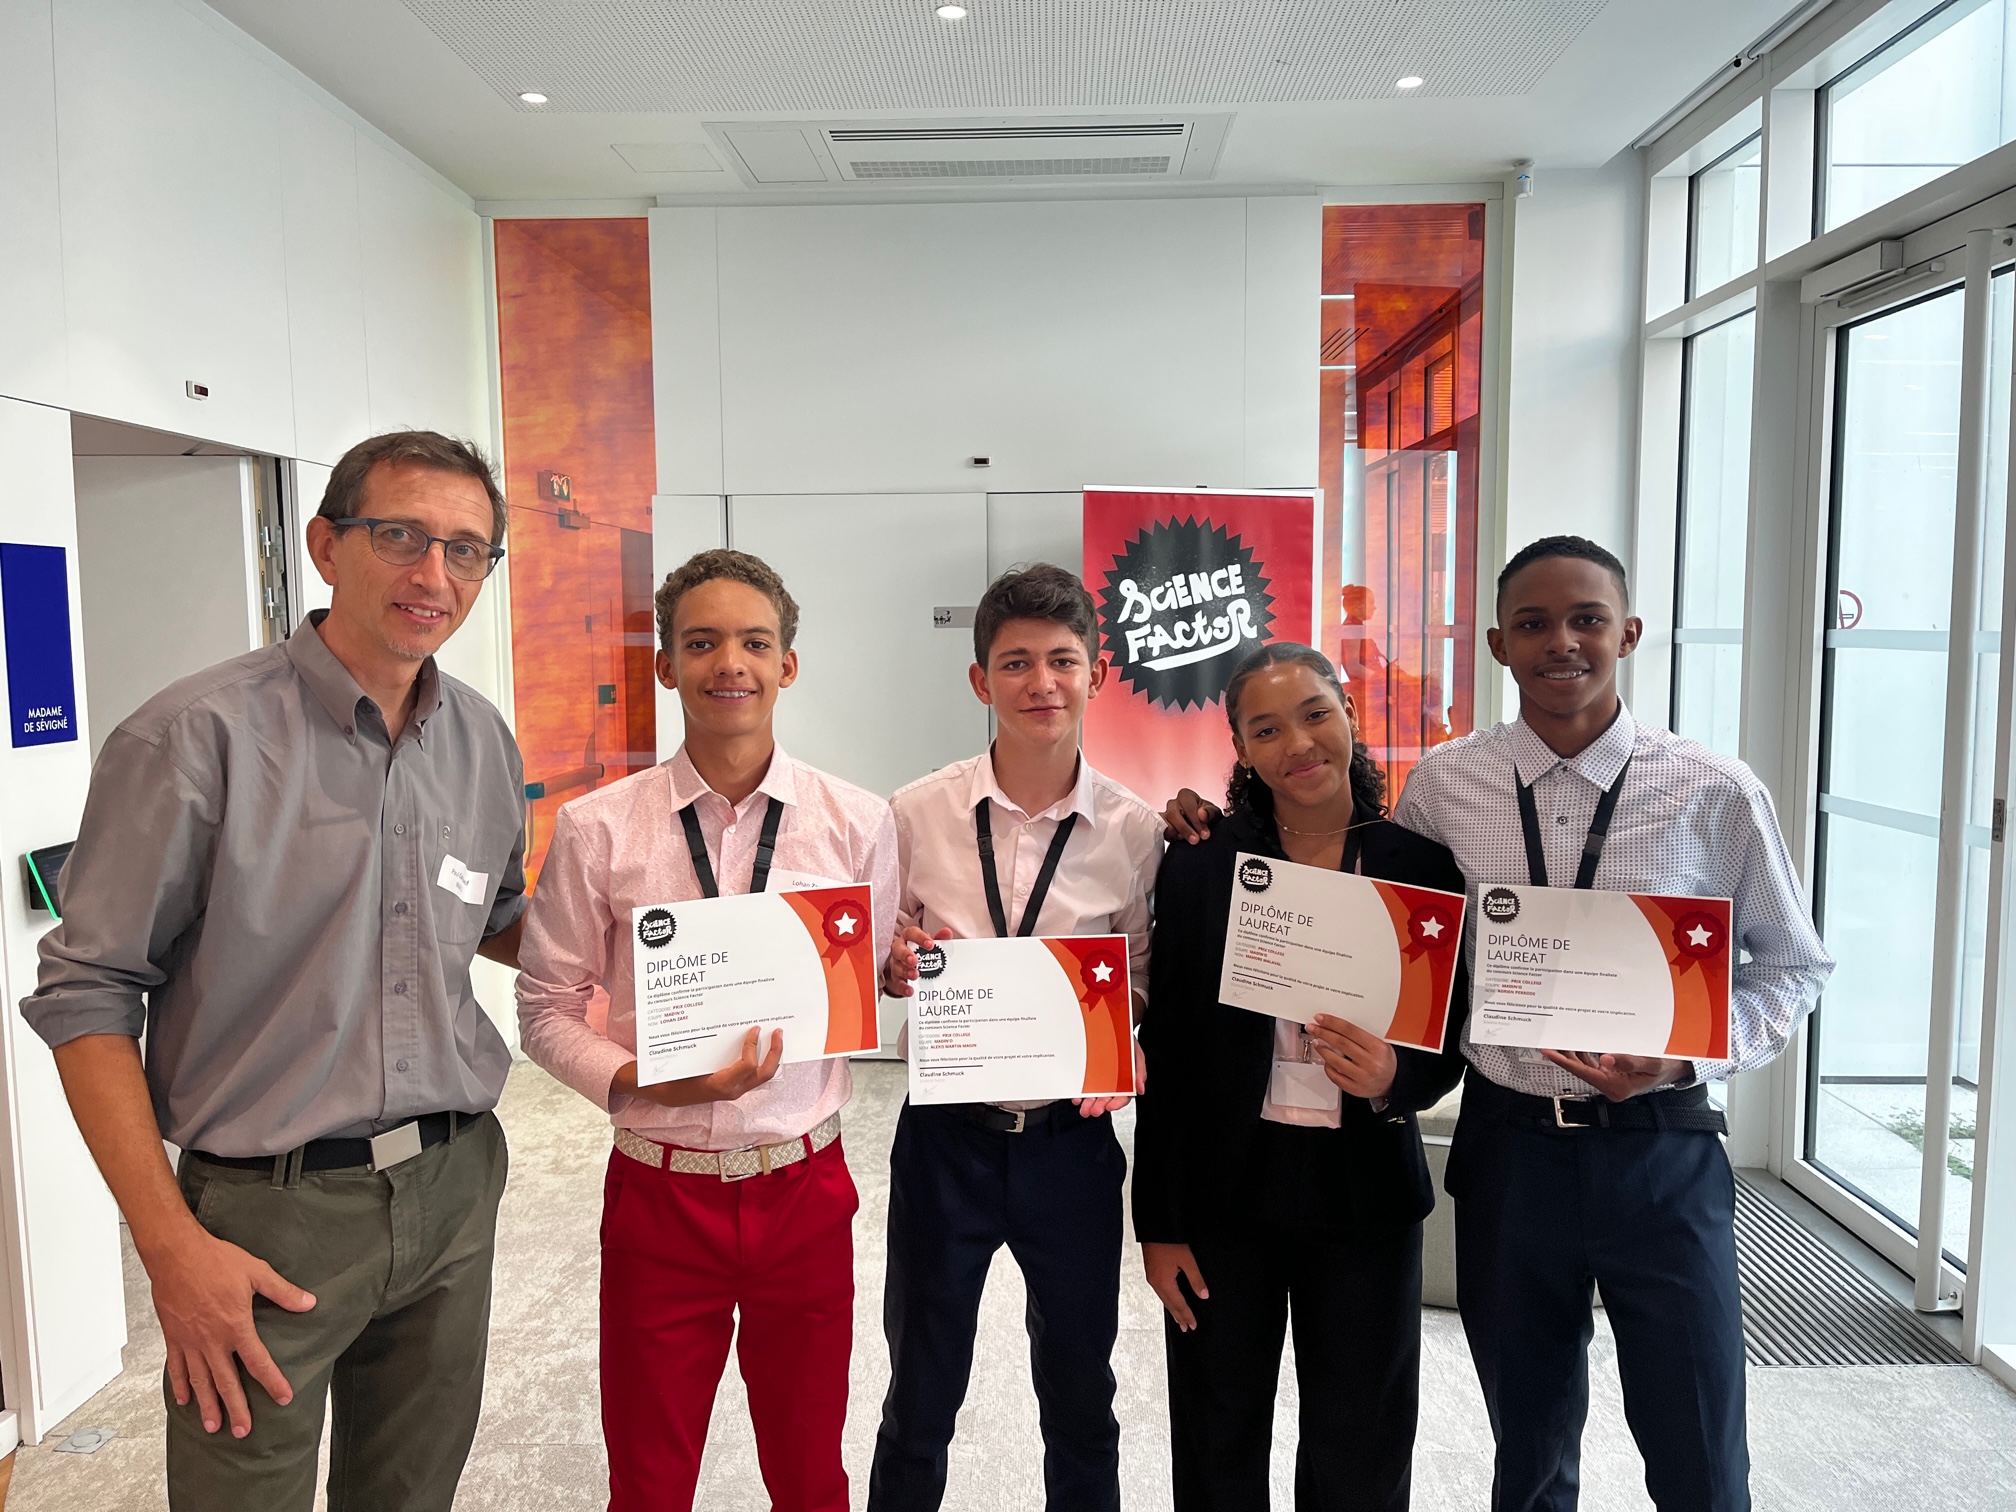     Concours Science Factor : l’équipe de Martinique double lauréate 

